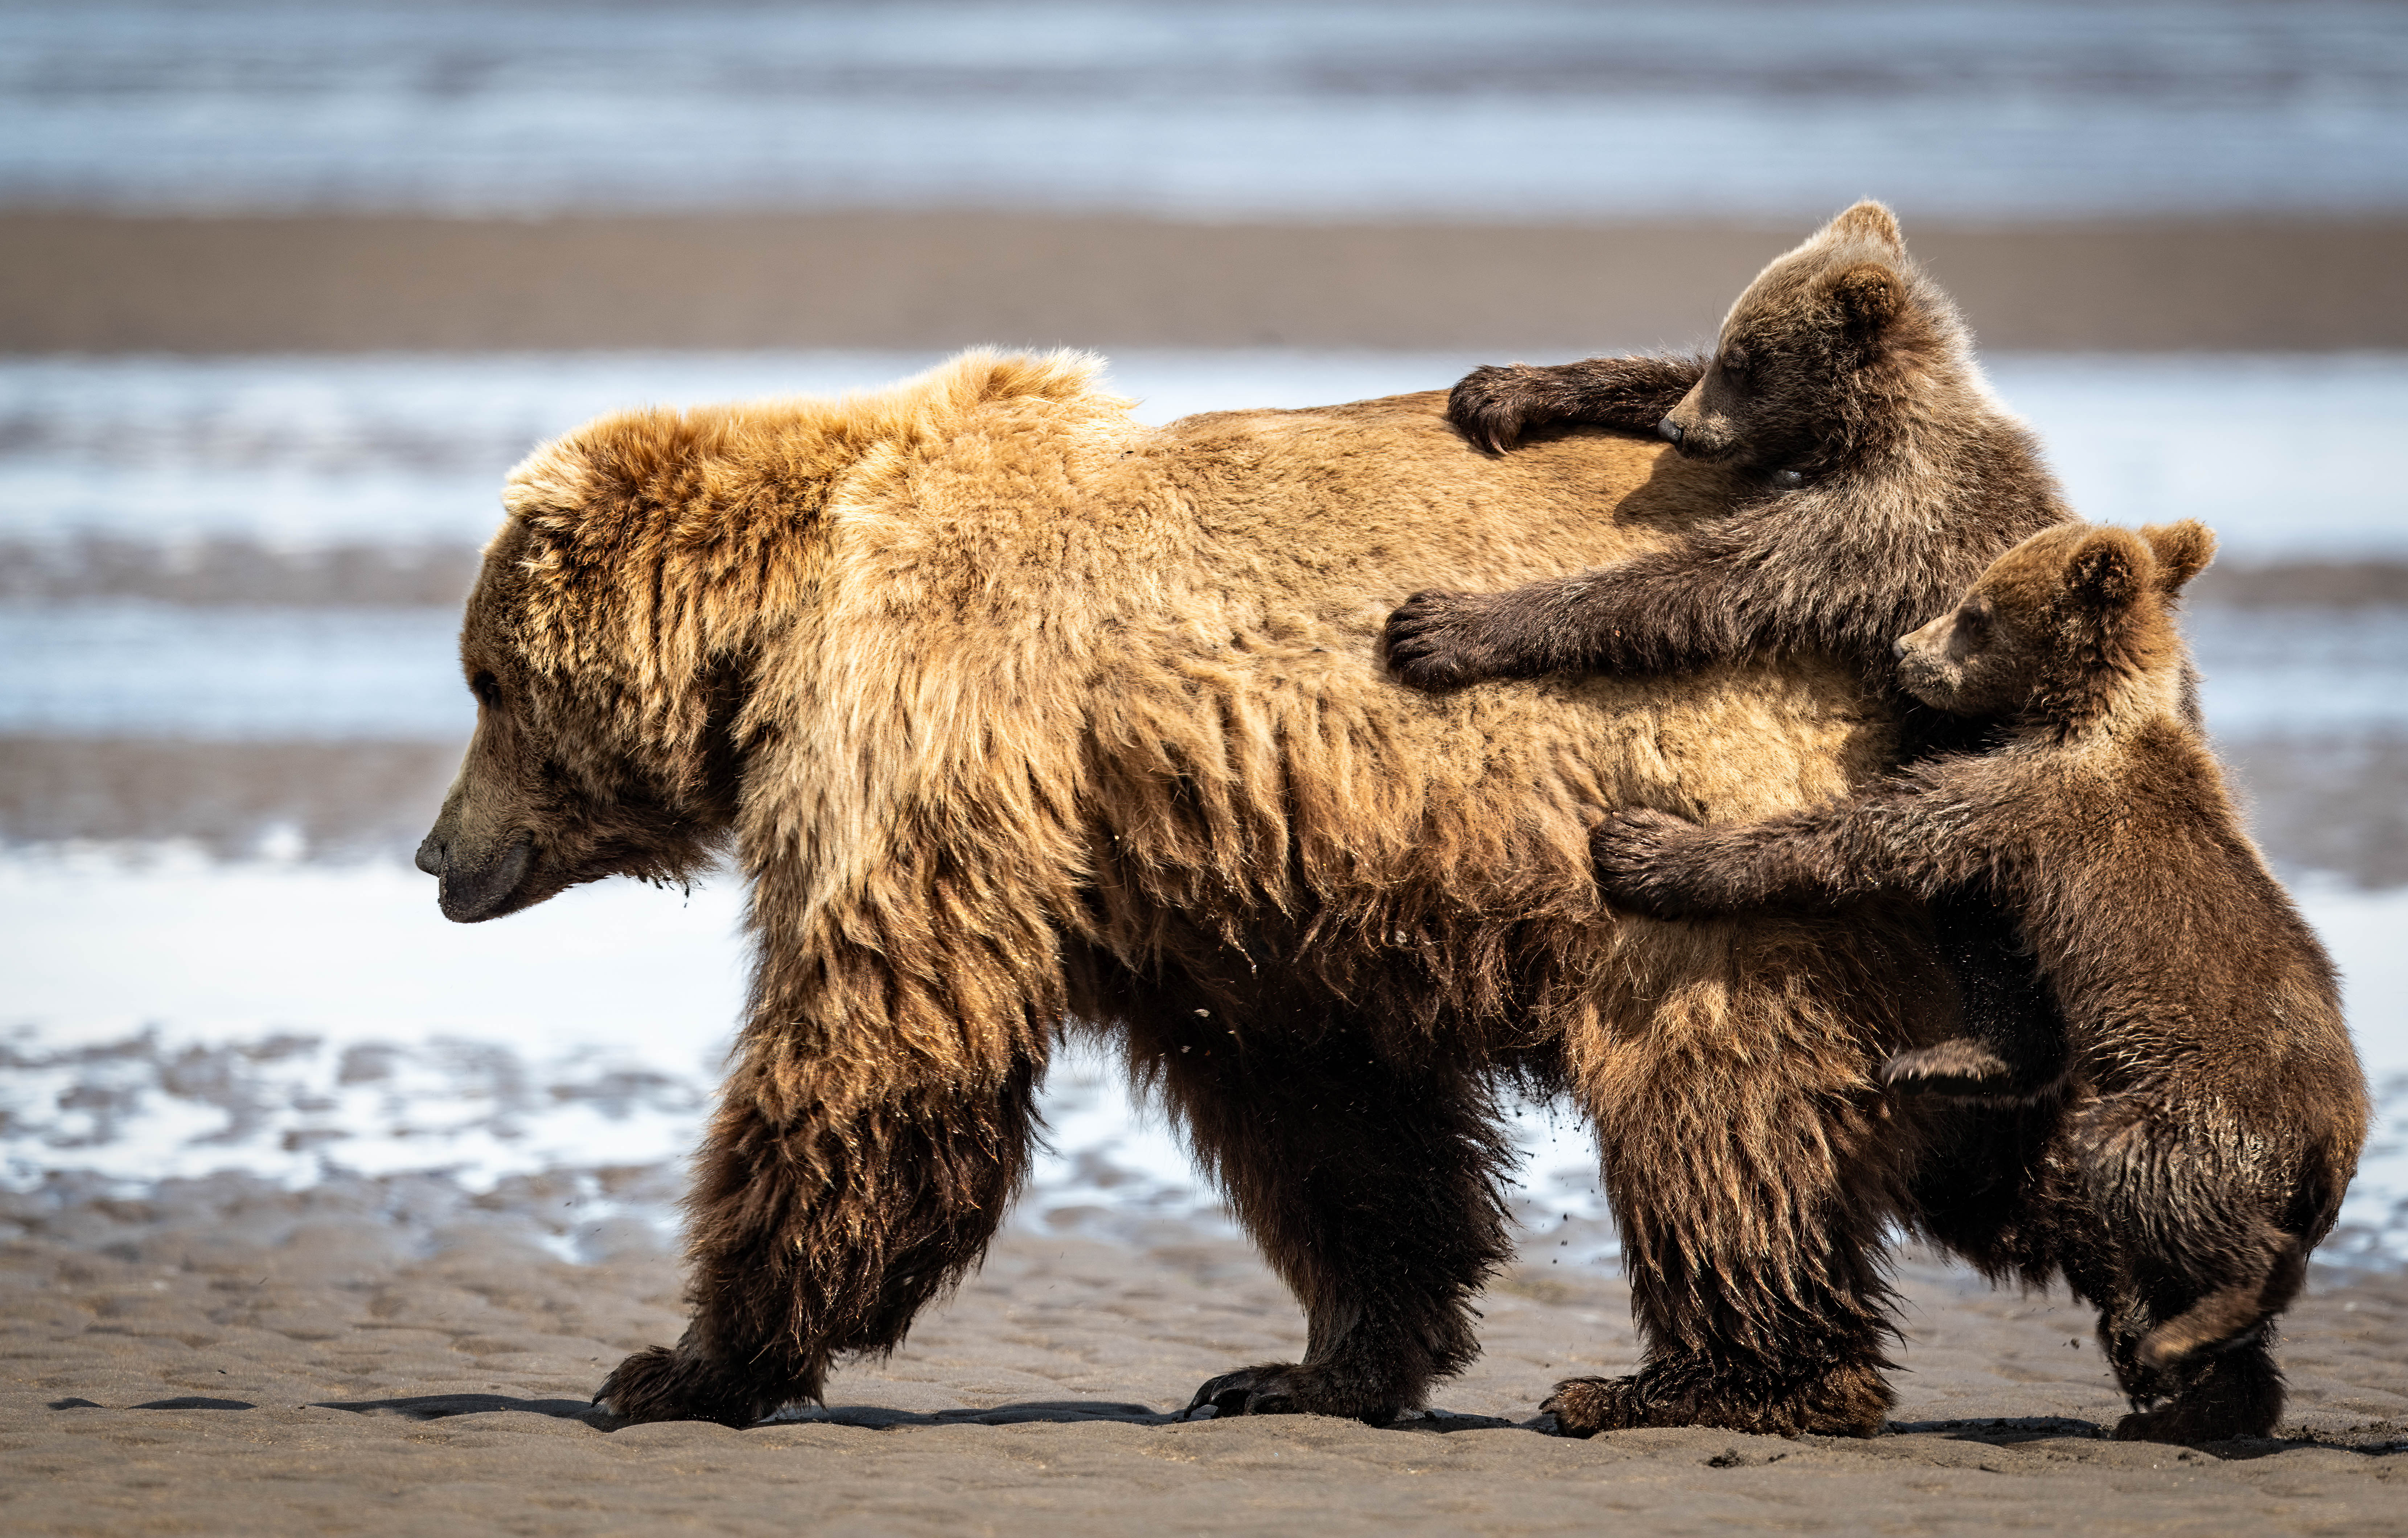 Uma mãe ursa se afasta enquanto seus filhotes se agarram atrás dela.